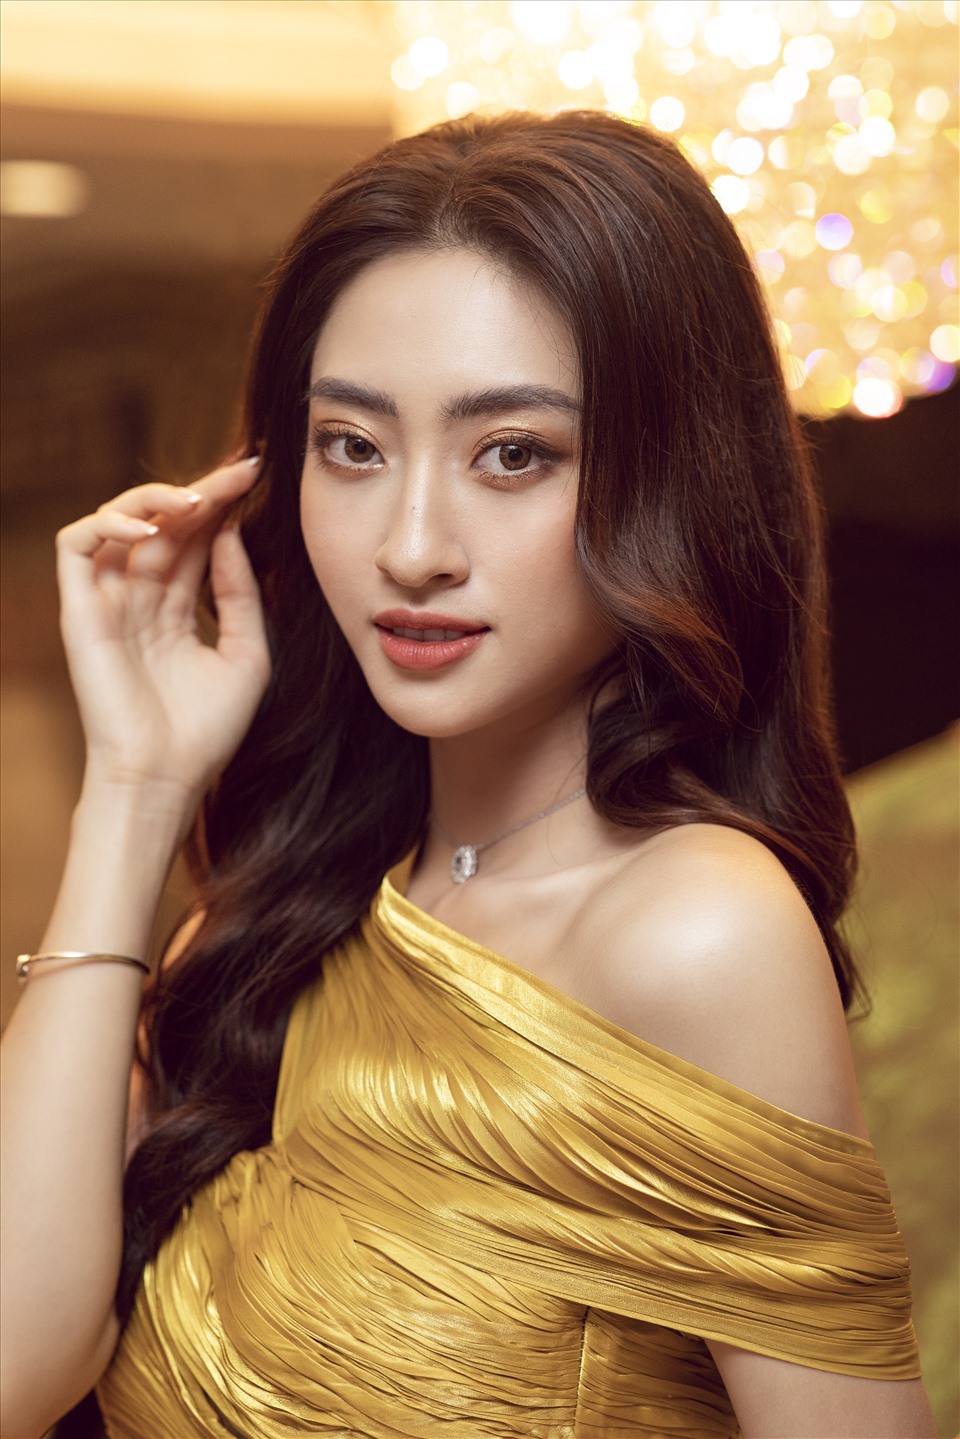 Hoa hậu Lương Thuỳ Linh diện trang sức tiền tỉ, làm giám đốc ở tuổi 20